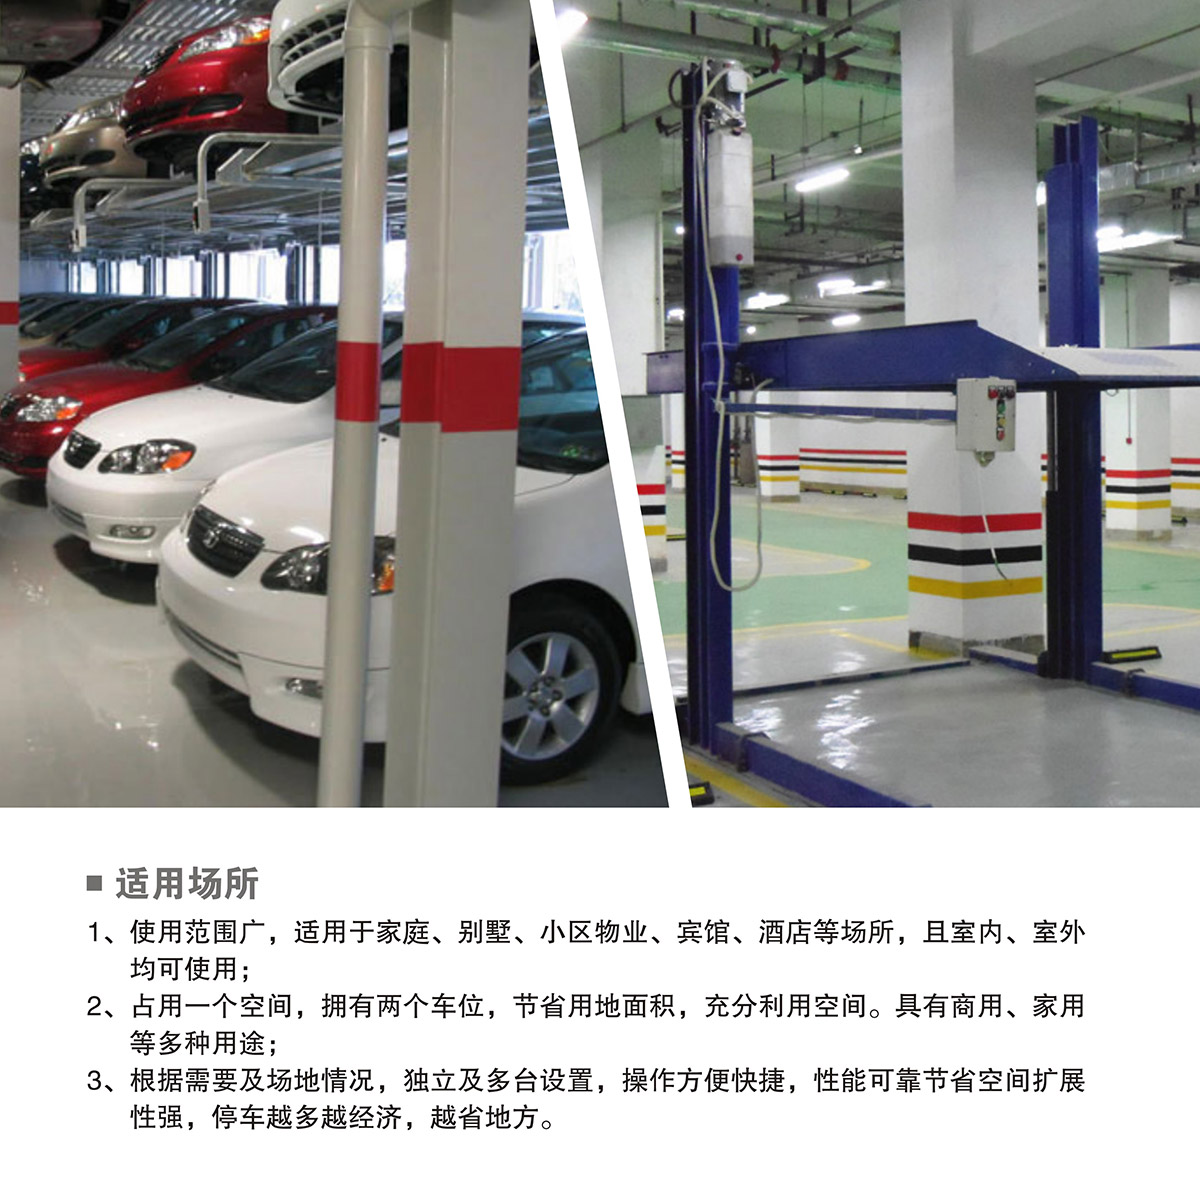 智能停车PJS两柱简易升降立体车库设备适用场所.jpg